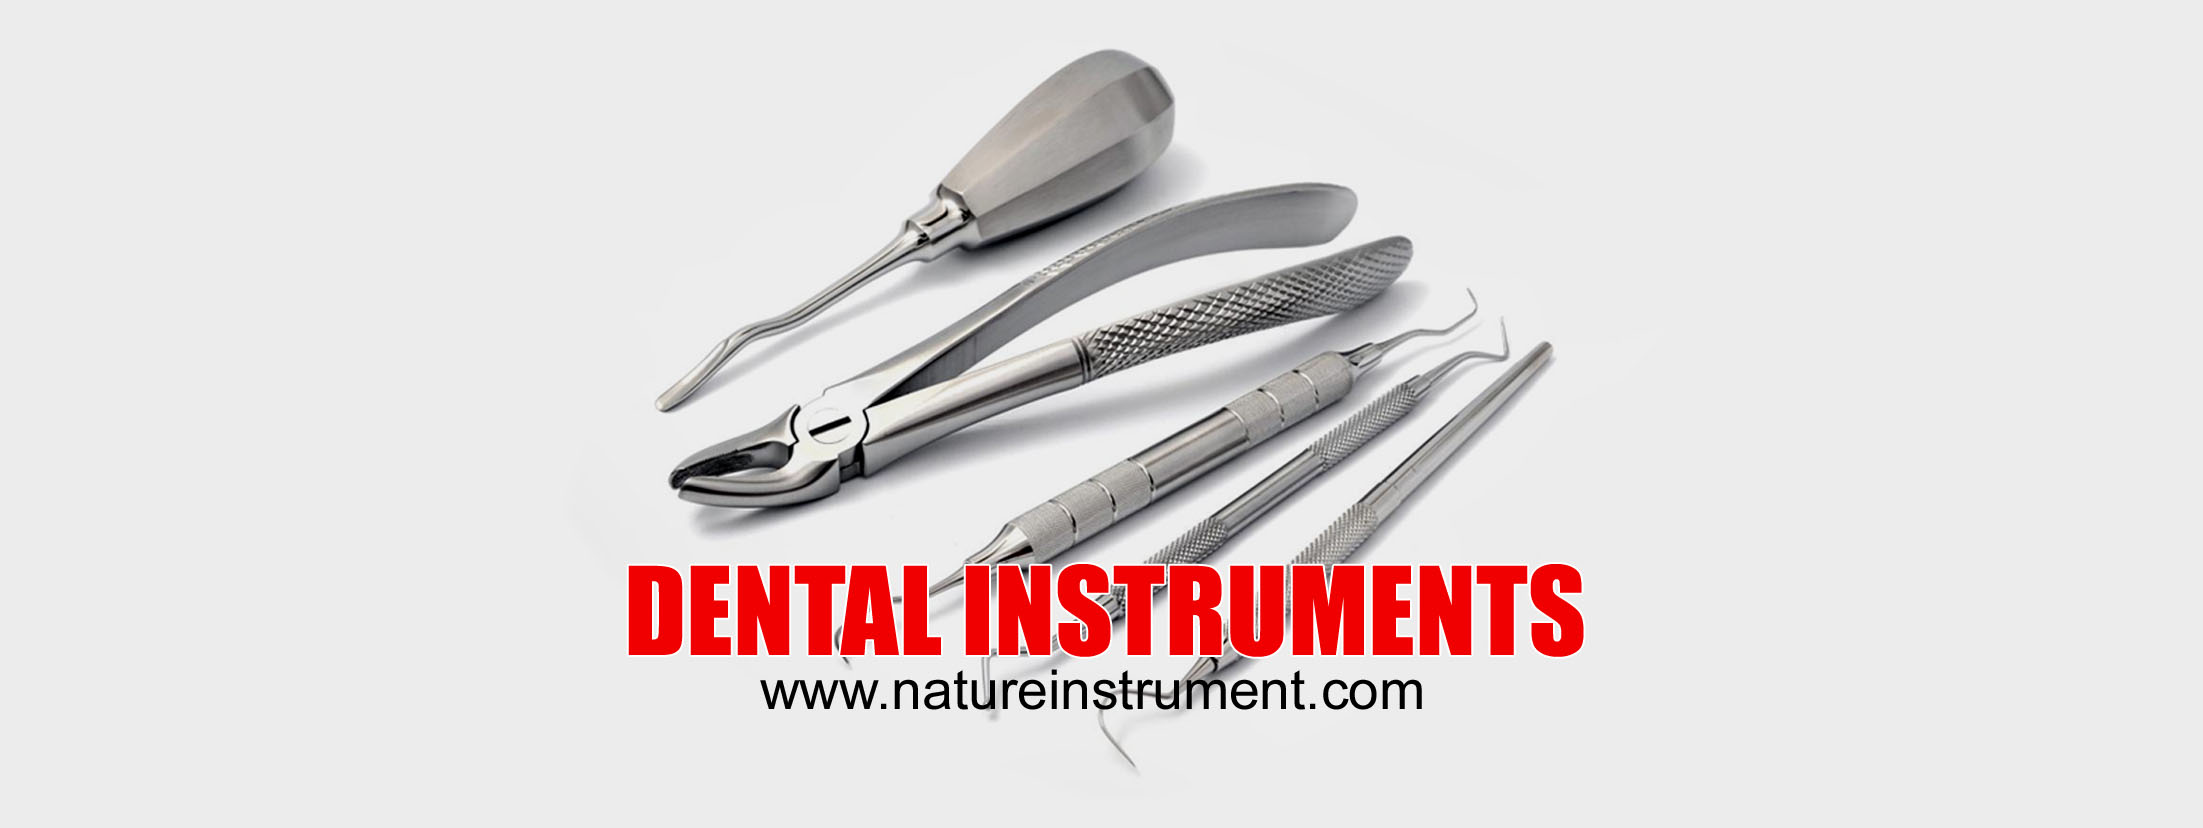 https://natureinstrument.com/source/banner/main/nature-instrument-dental-instruments.jpg